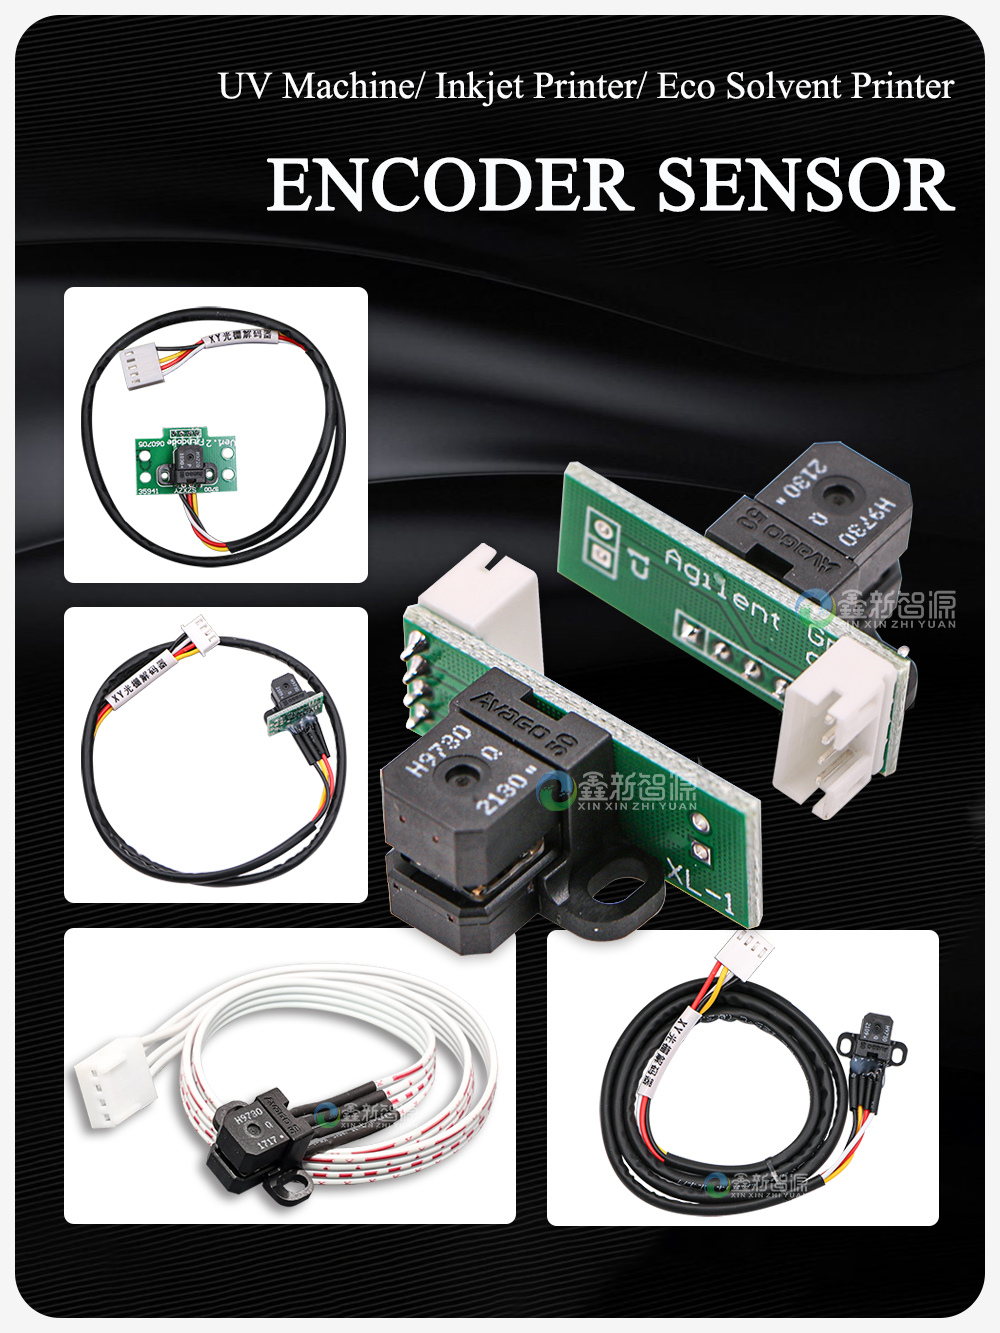 Encoder Sensor for Wide Format Printer